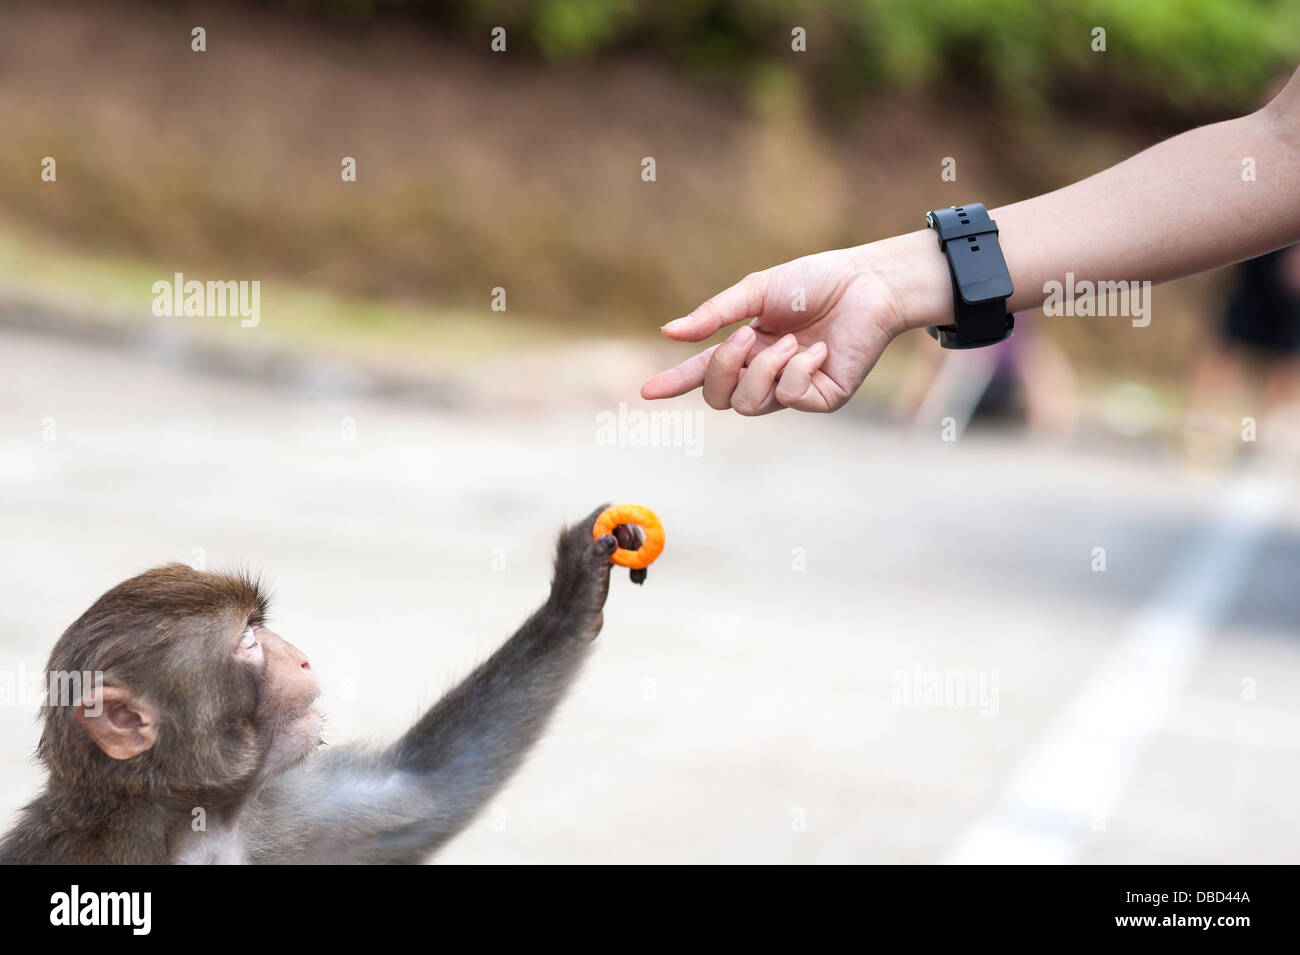 Primo piano di una scimmia selvatici prendendo un nitido da una mano umana, hong kong Foto Stock